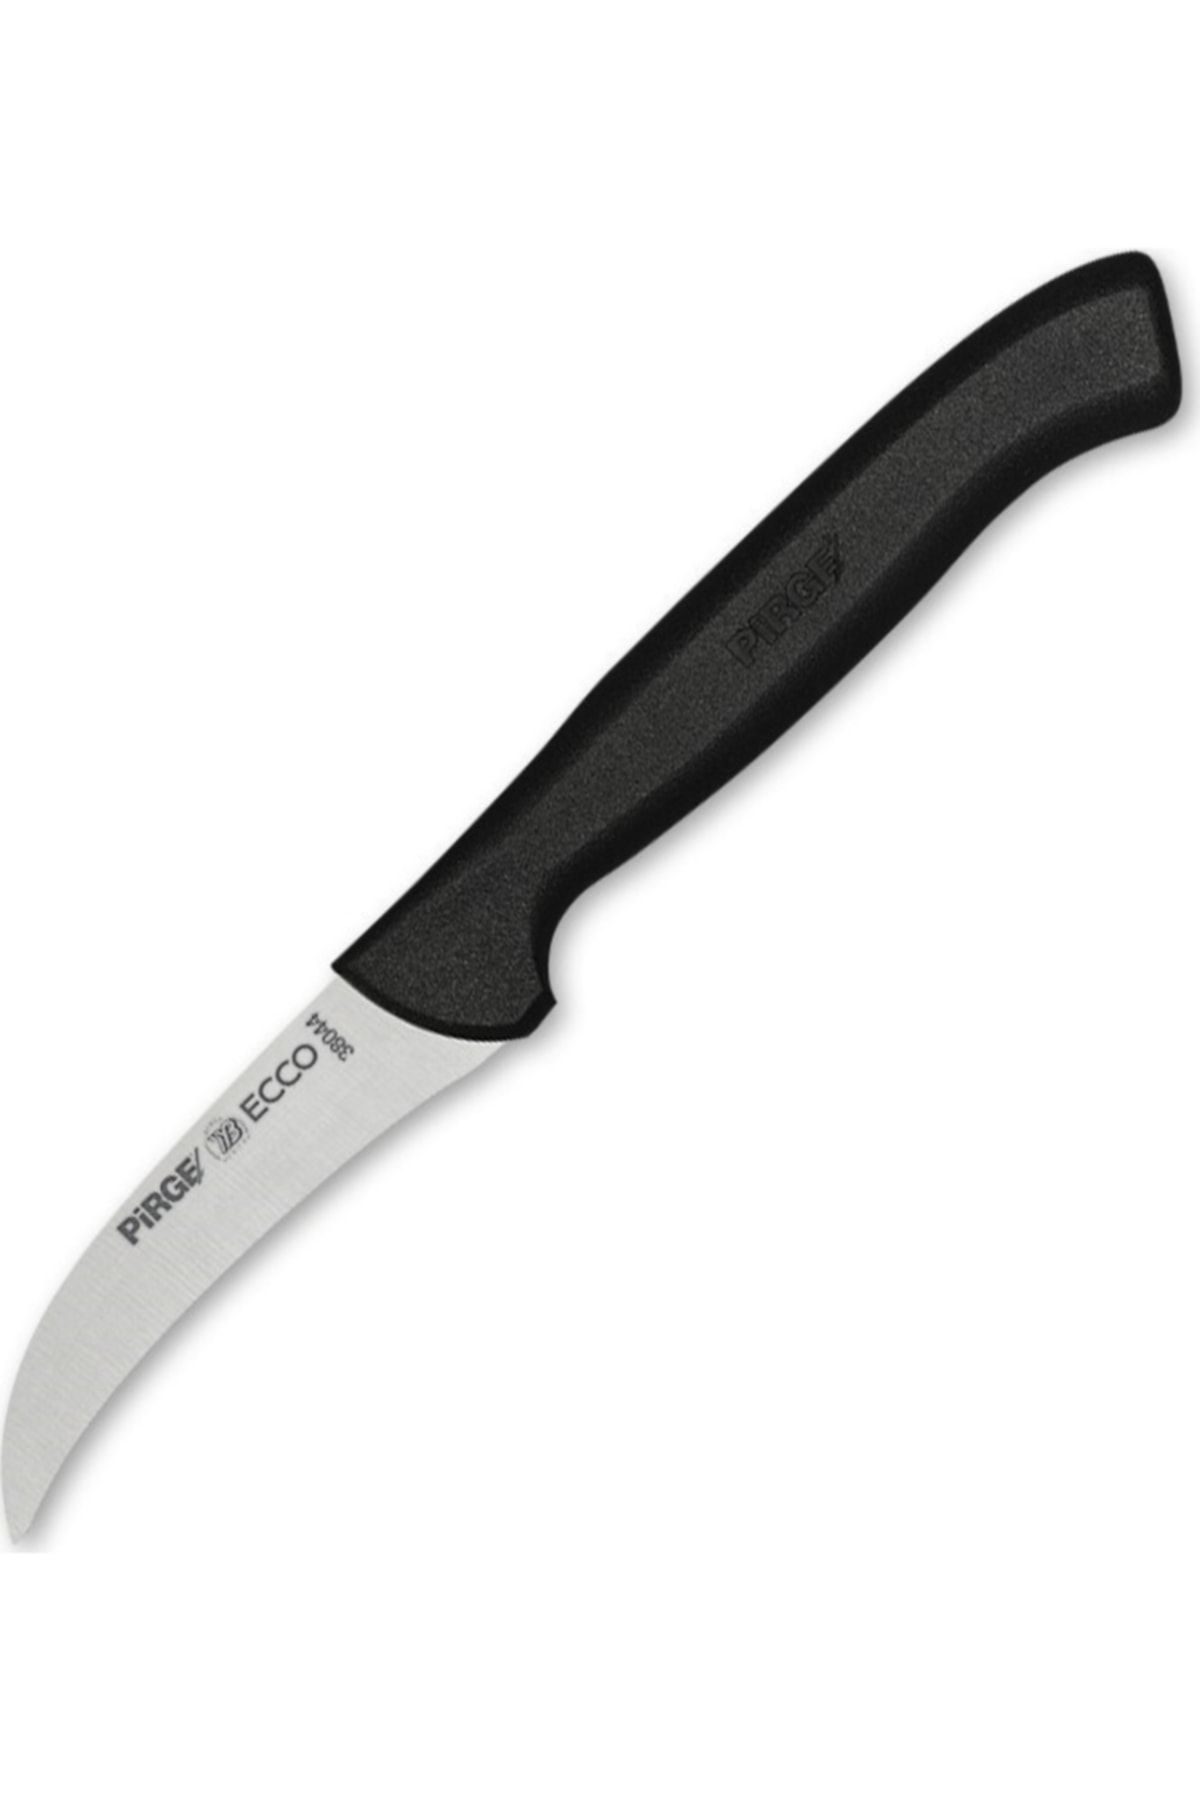 Pirge Ecco Kestane Soyma Bıçağı 7,5 Cm